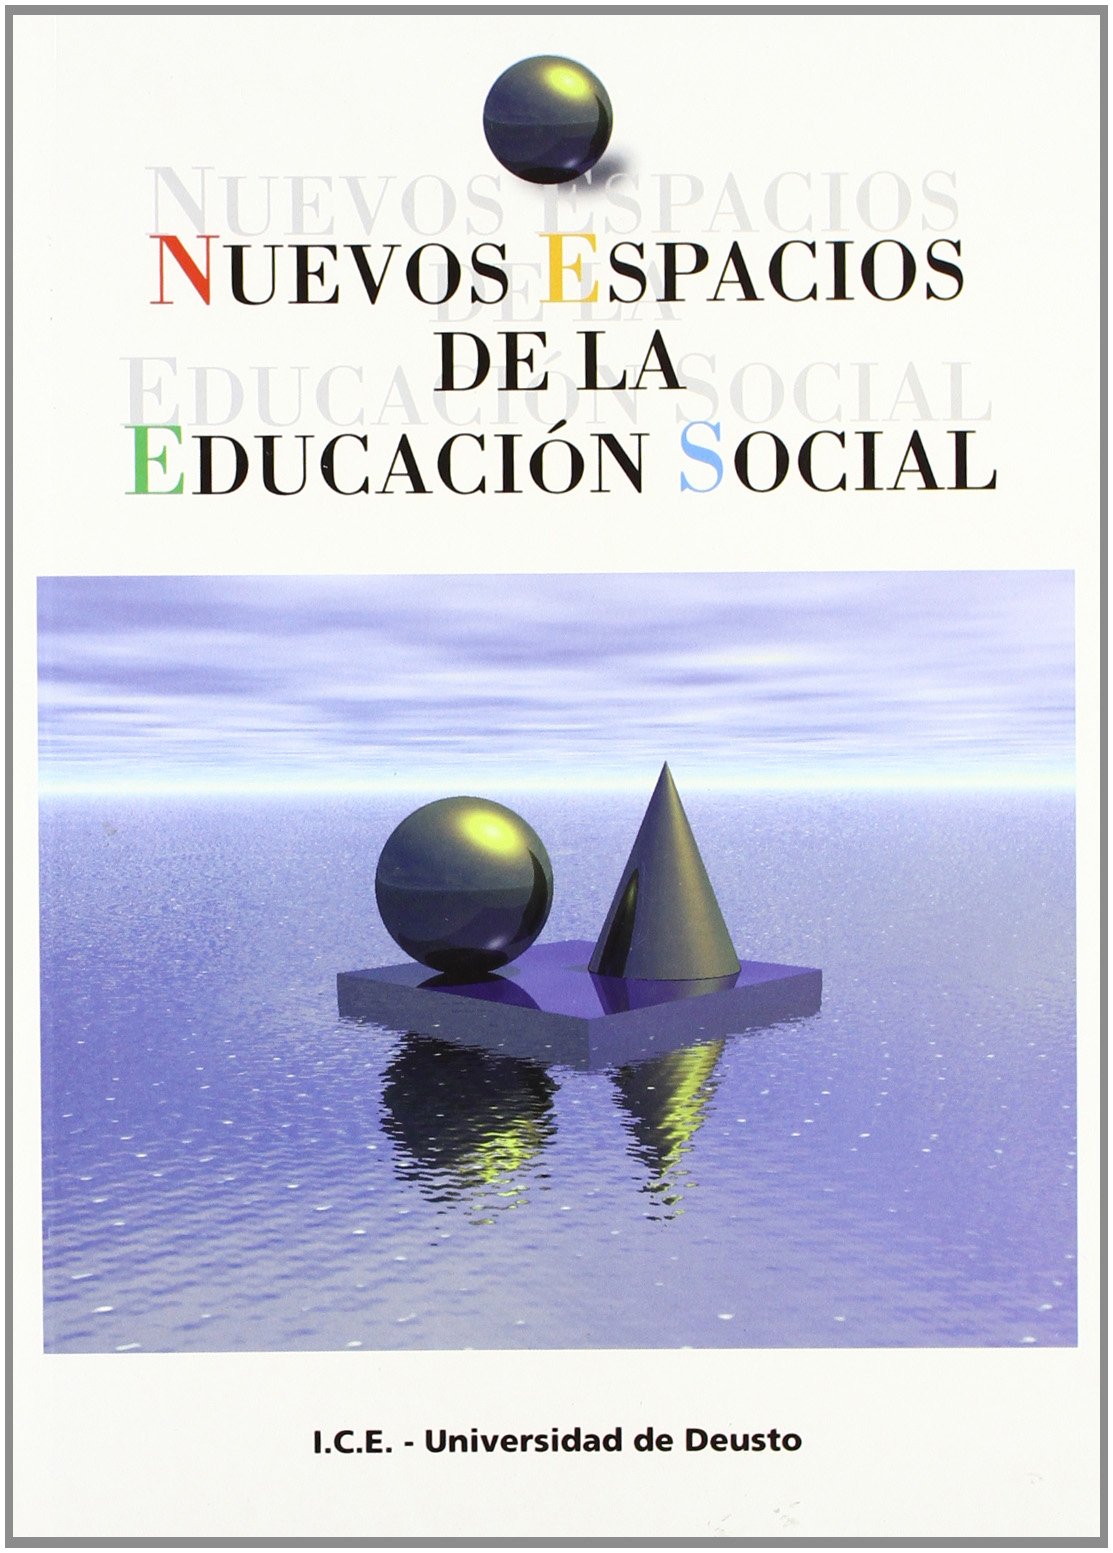 Imagen de portada del libro Nuevos espacios de la educación social